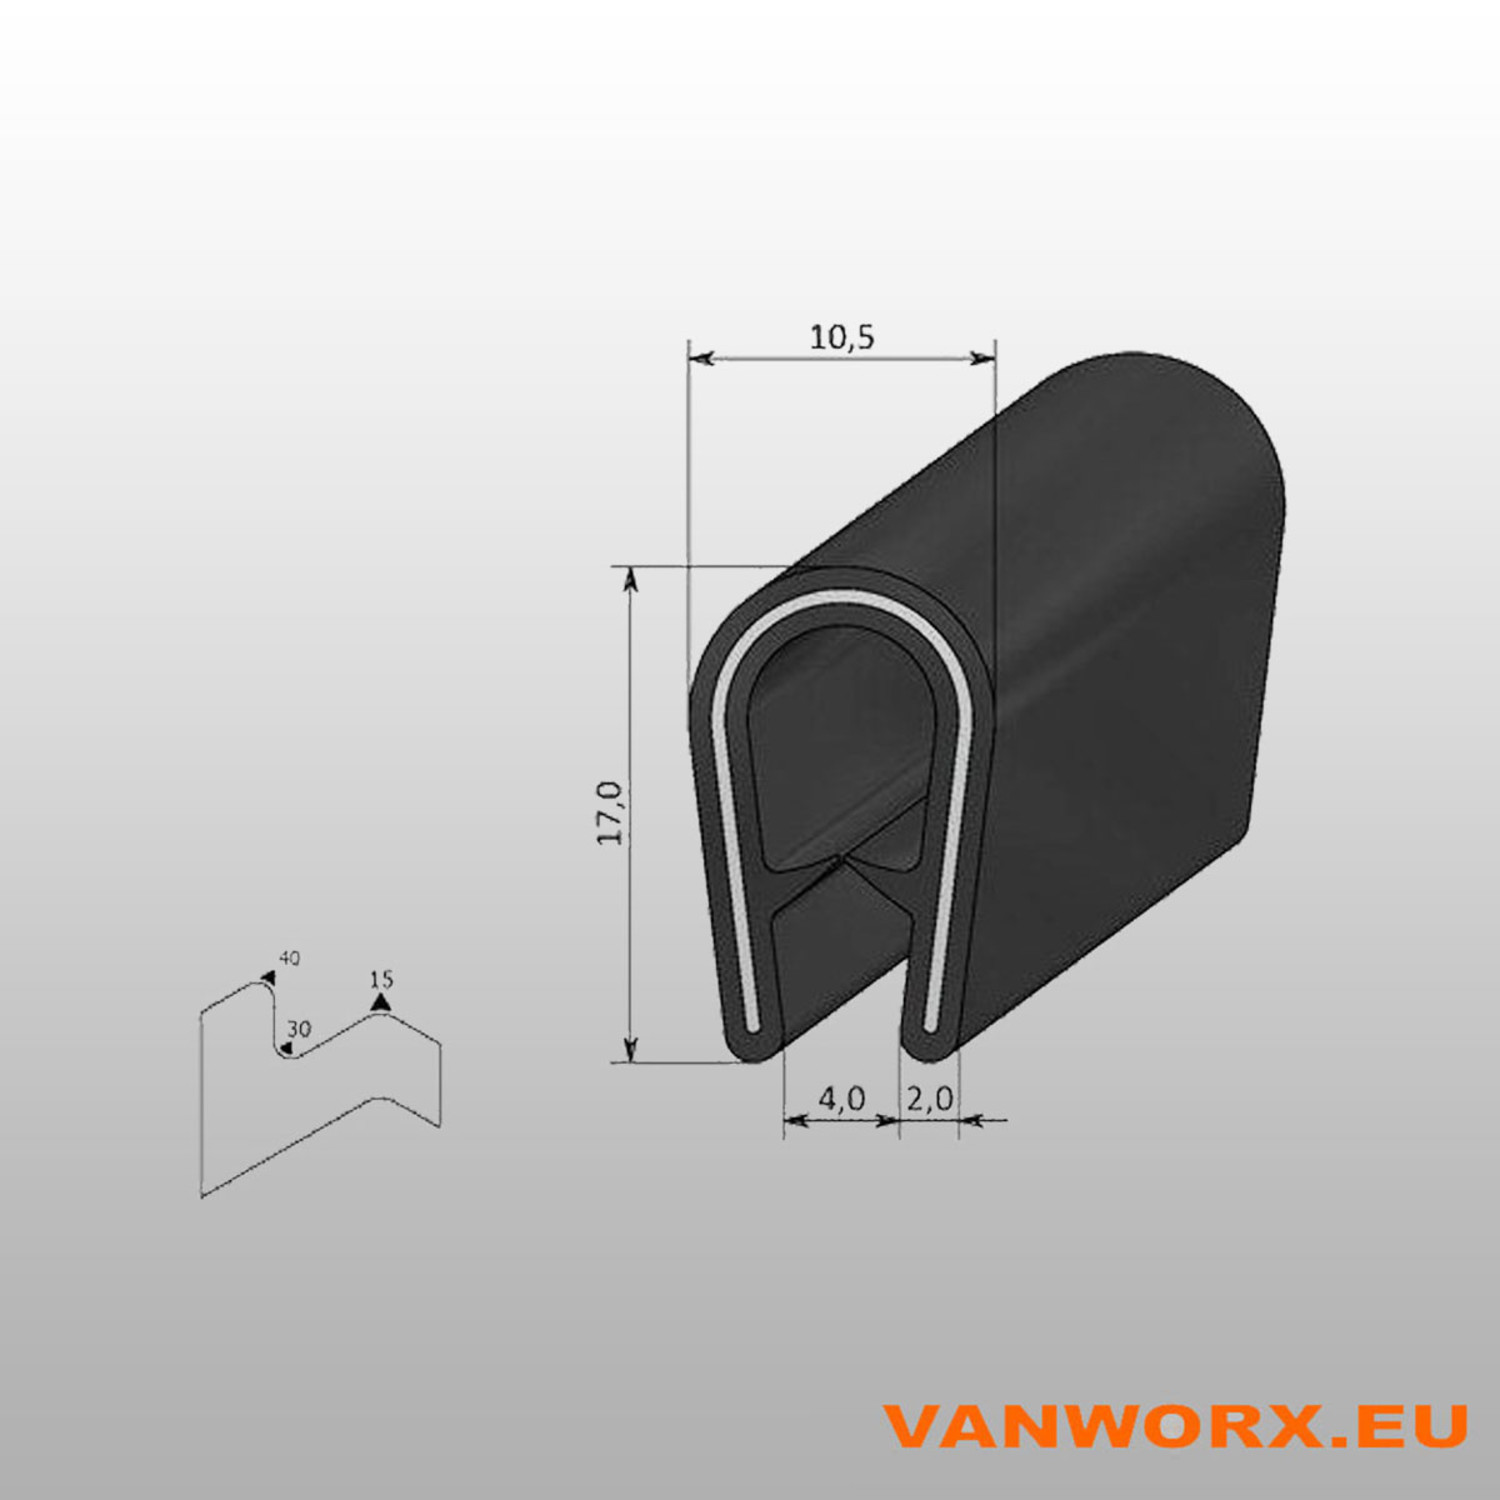 Kantenschutz PVC 1-4 mm 